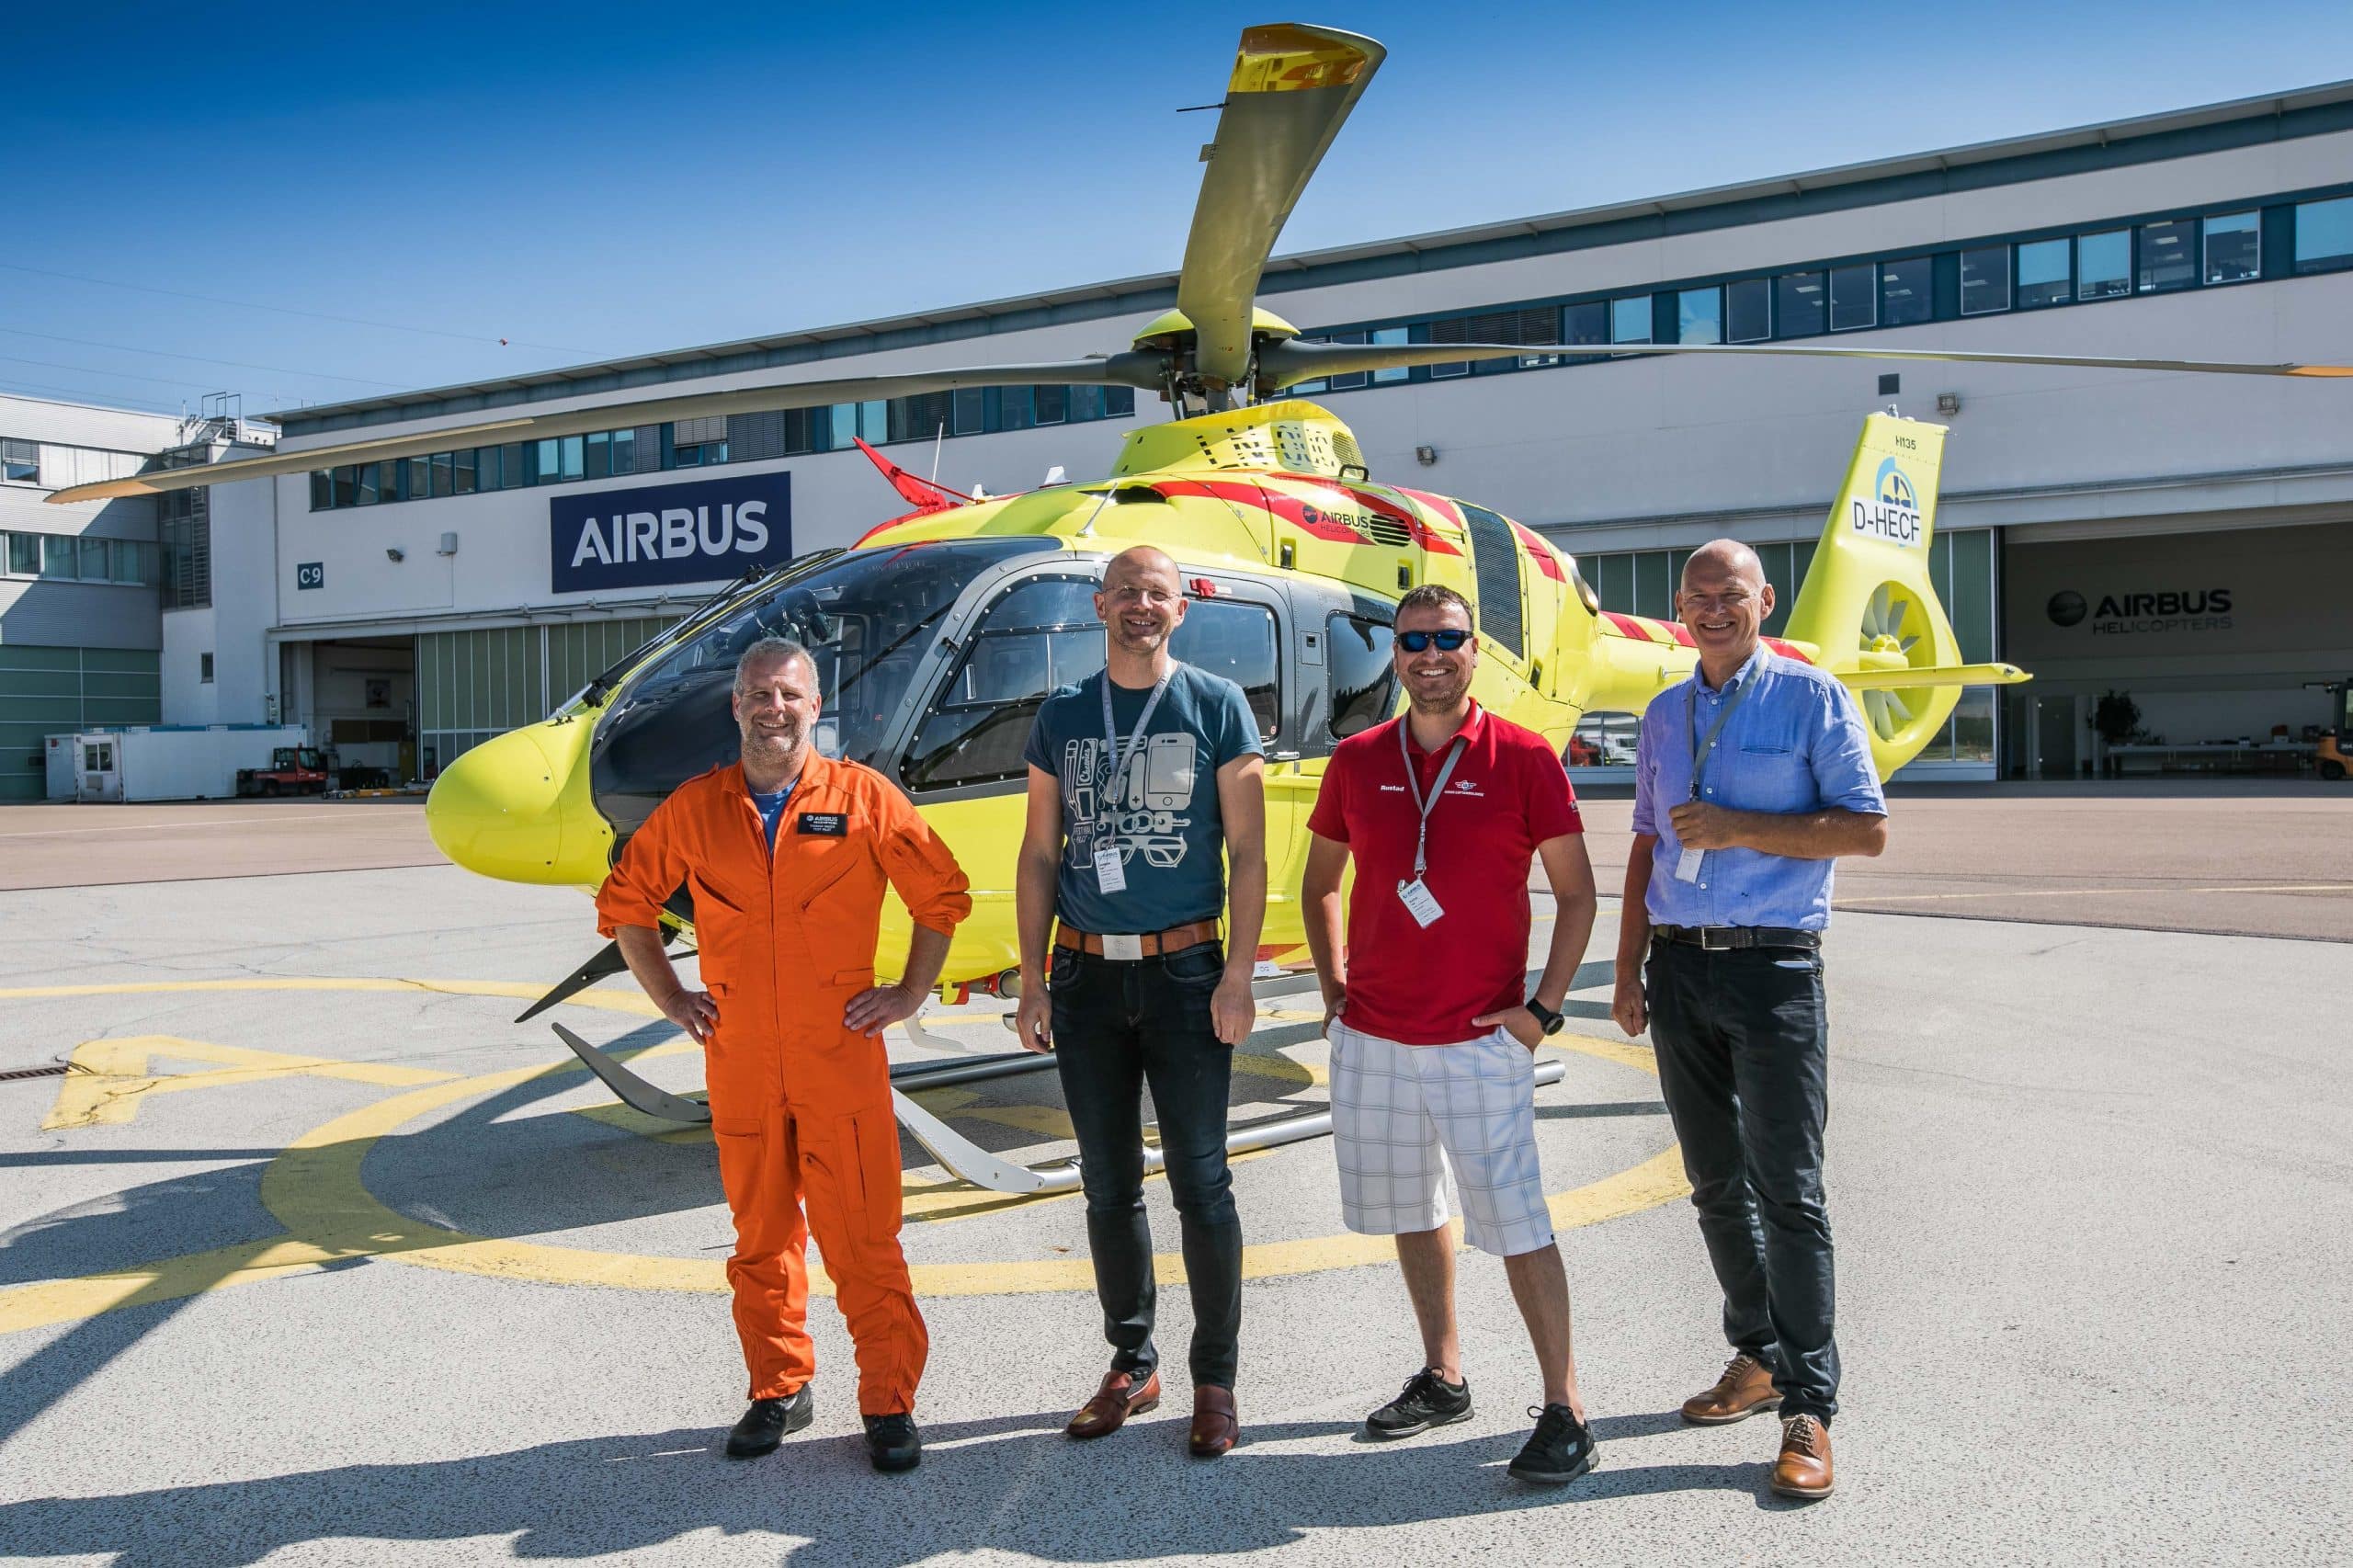 Representanter fra SNLA og Airbus står foran et legehelikopter